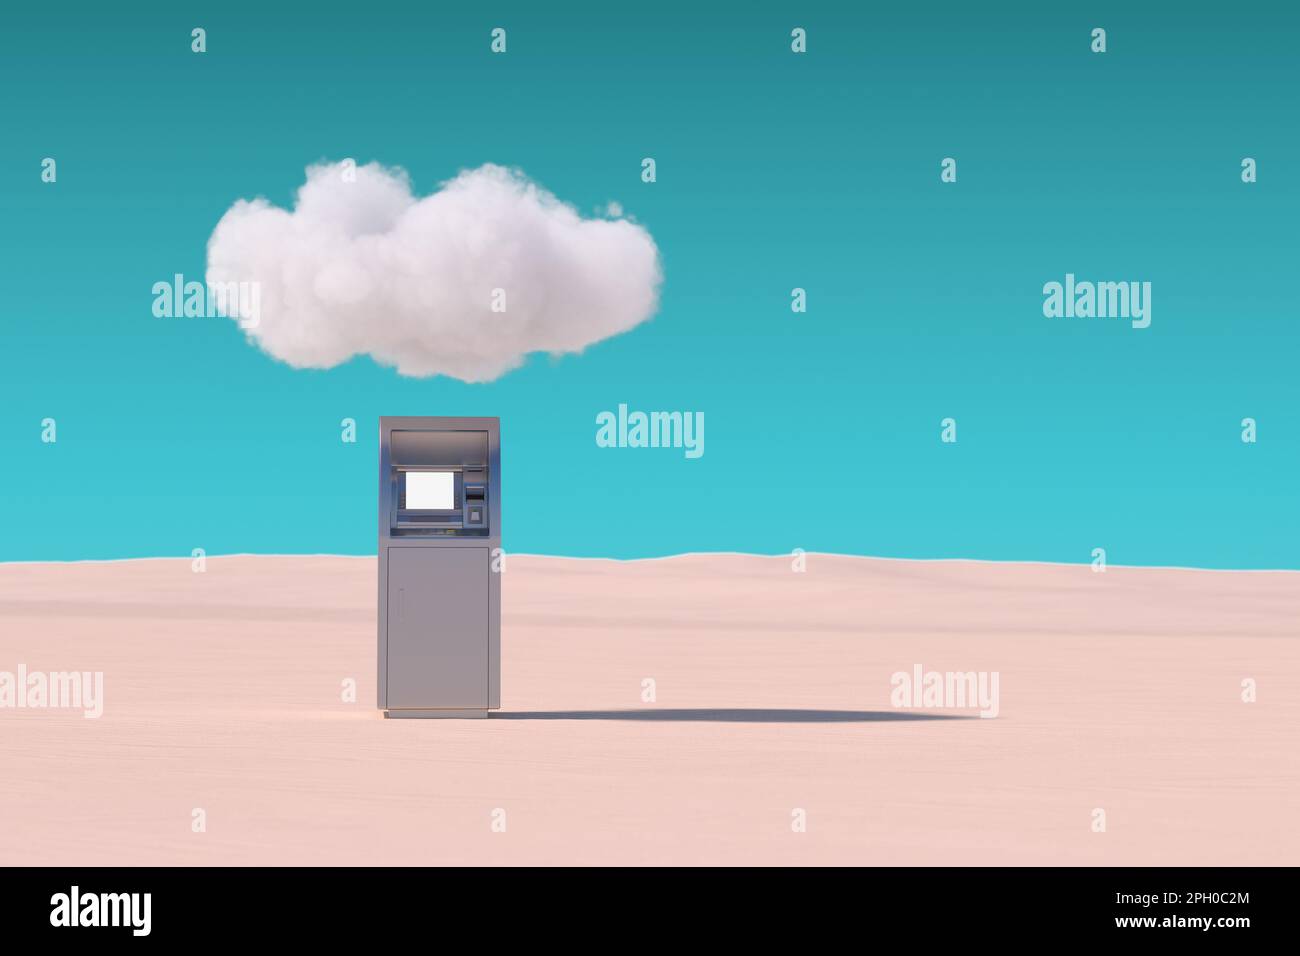 Geldautomat unter der Wolke in der Wüste auf blauem Himmel. 3D-Rendering Stockfoto